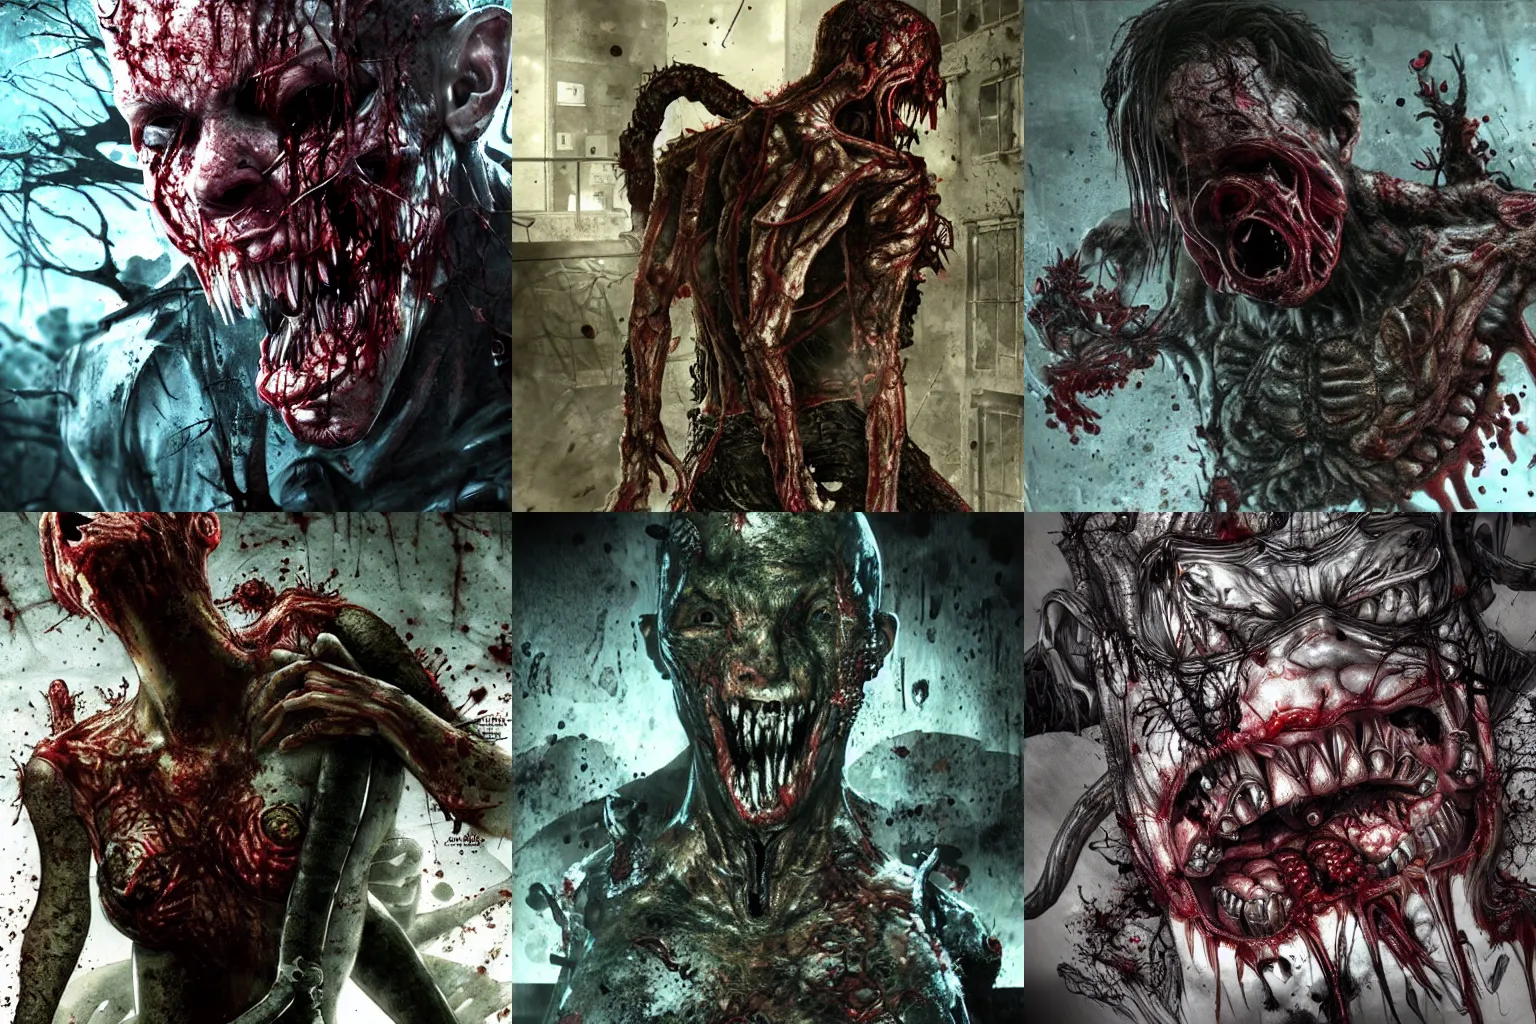 Prompt: Resident Evil virus concept art, nasty, vile, disgusting, rotten, putrid, highly detailed, horror, scary, terrifying, horrific, hd 4k